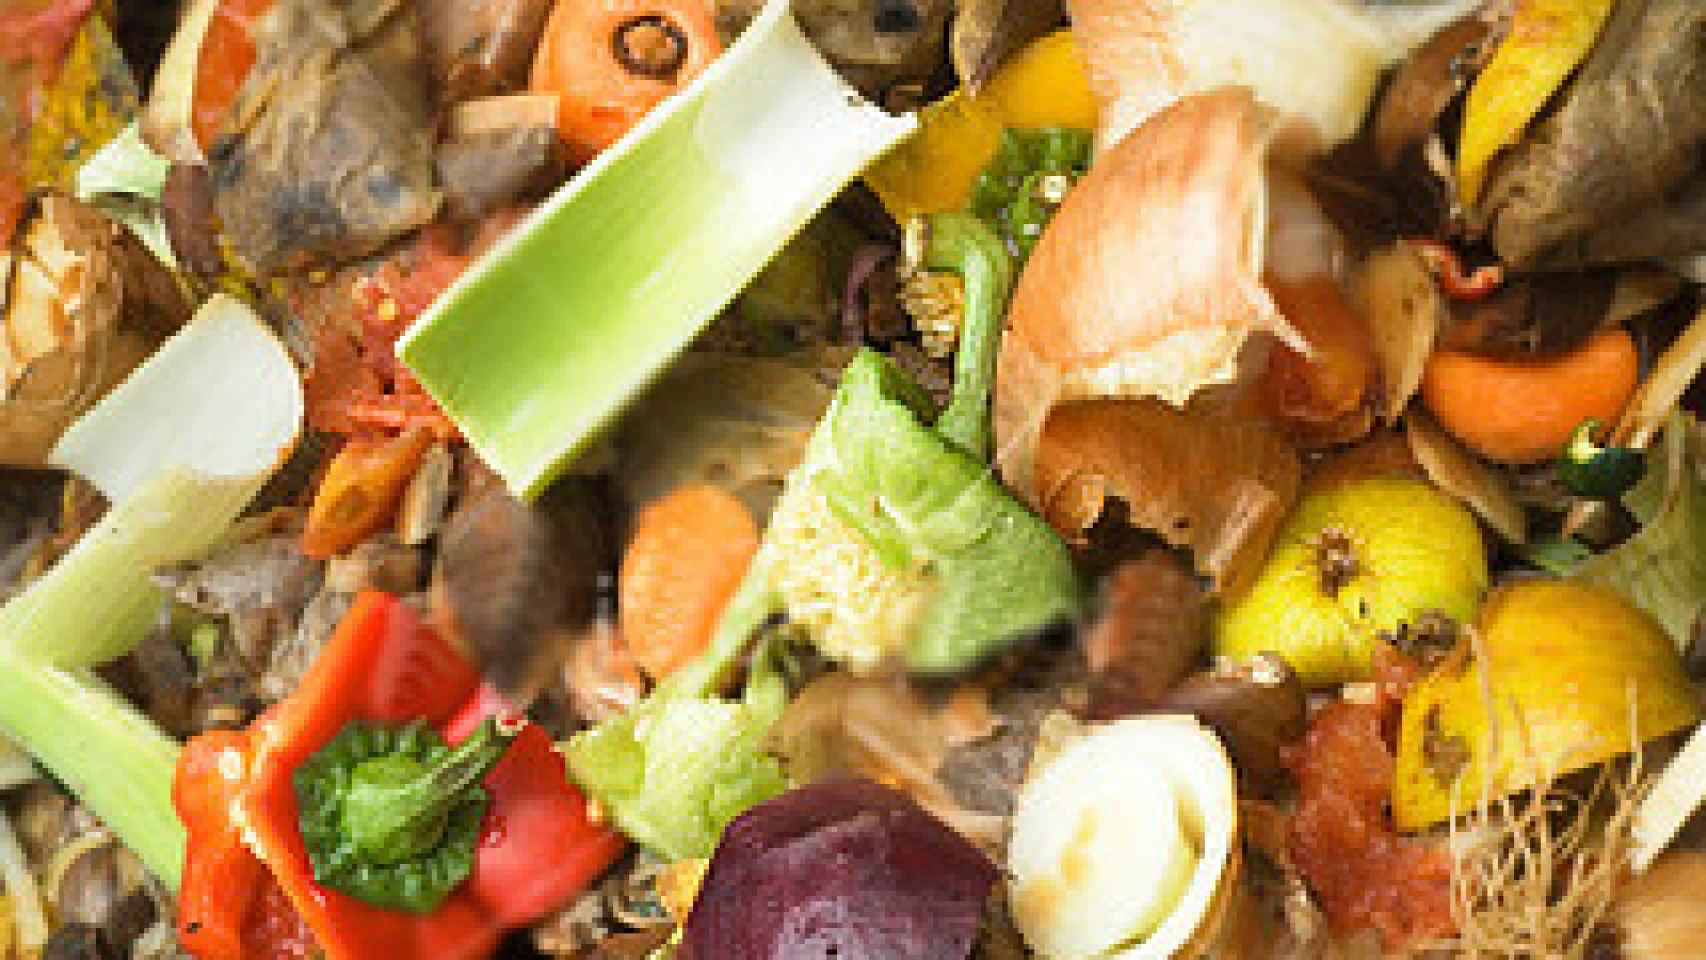 El 14% de los alimentos que se producen acaban en la basura